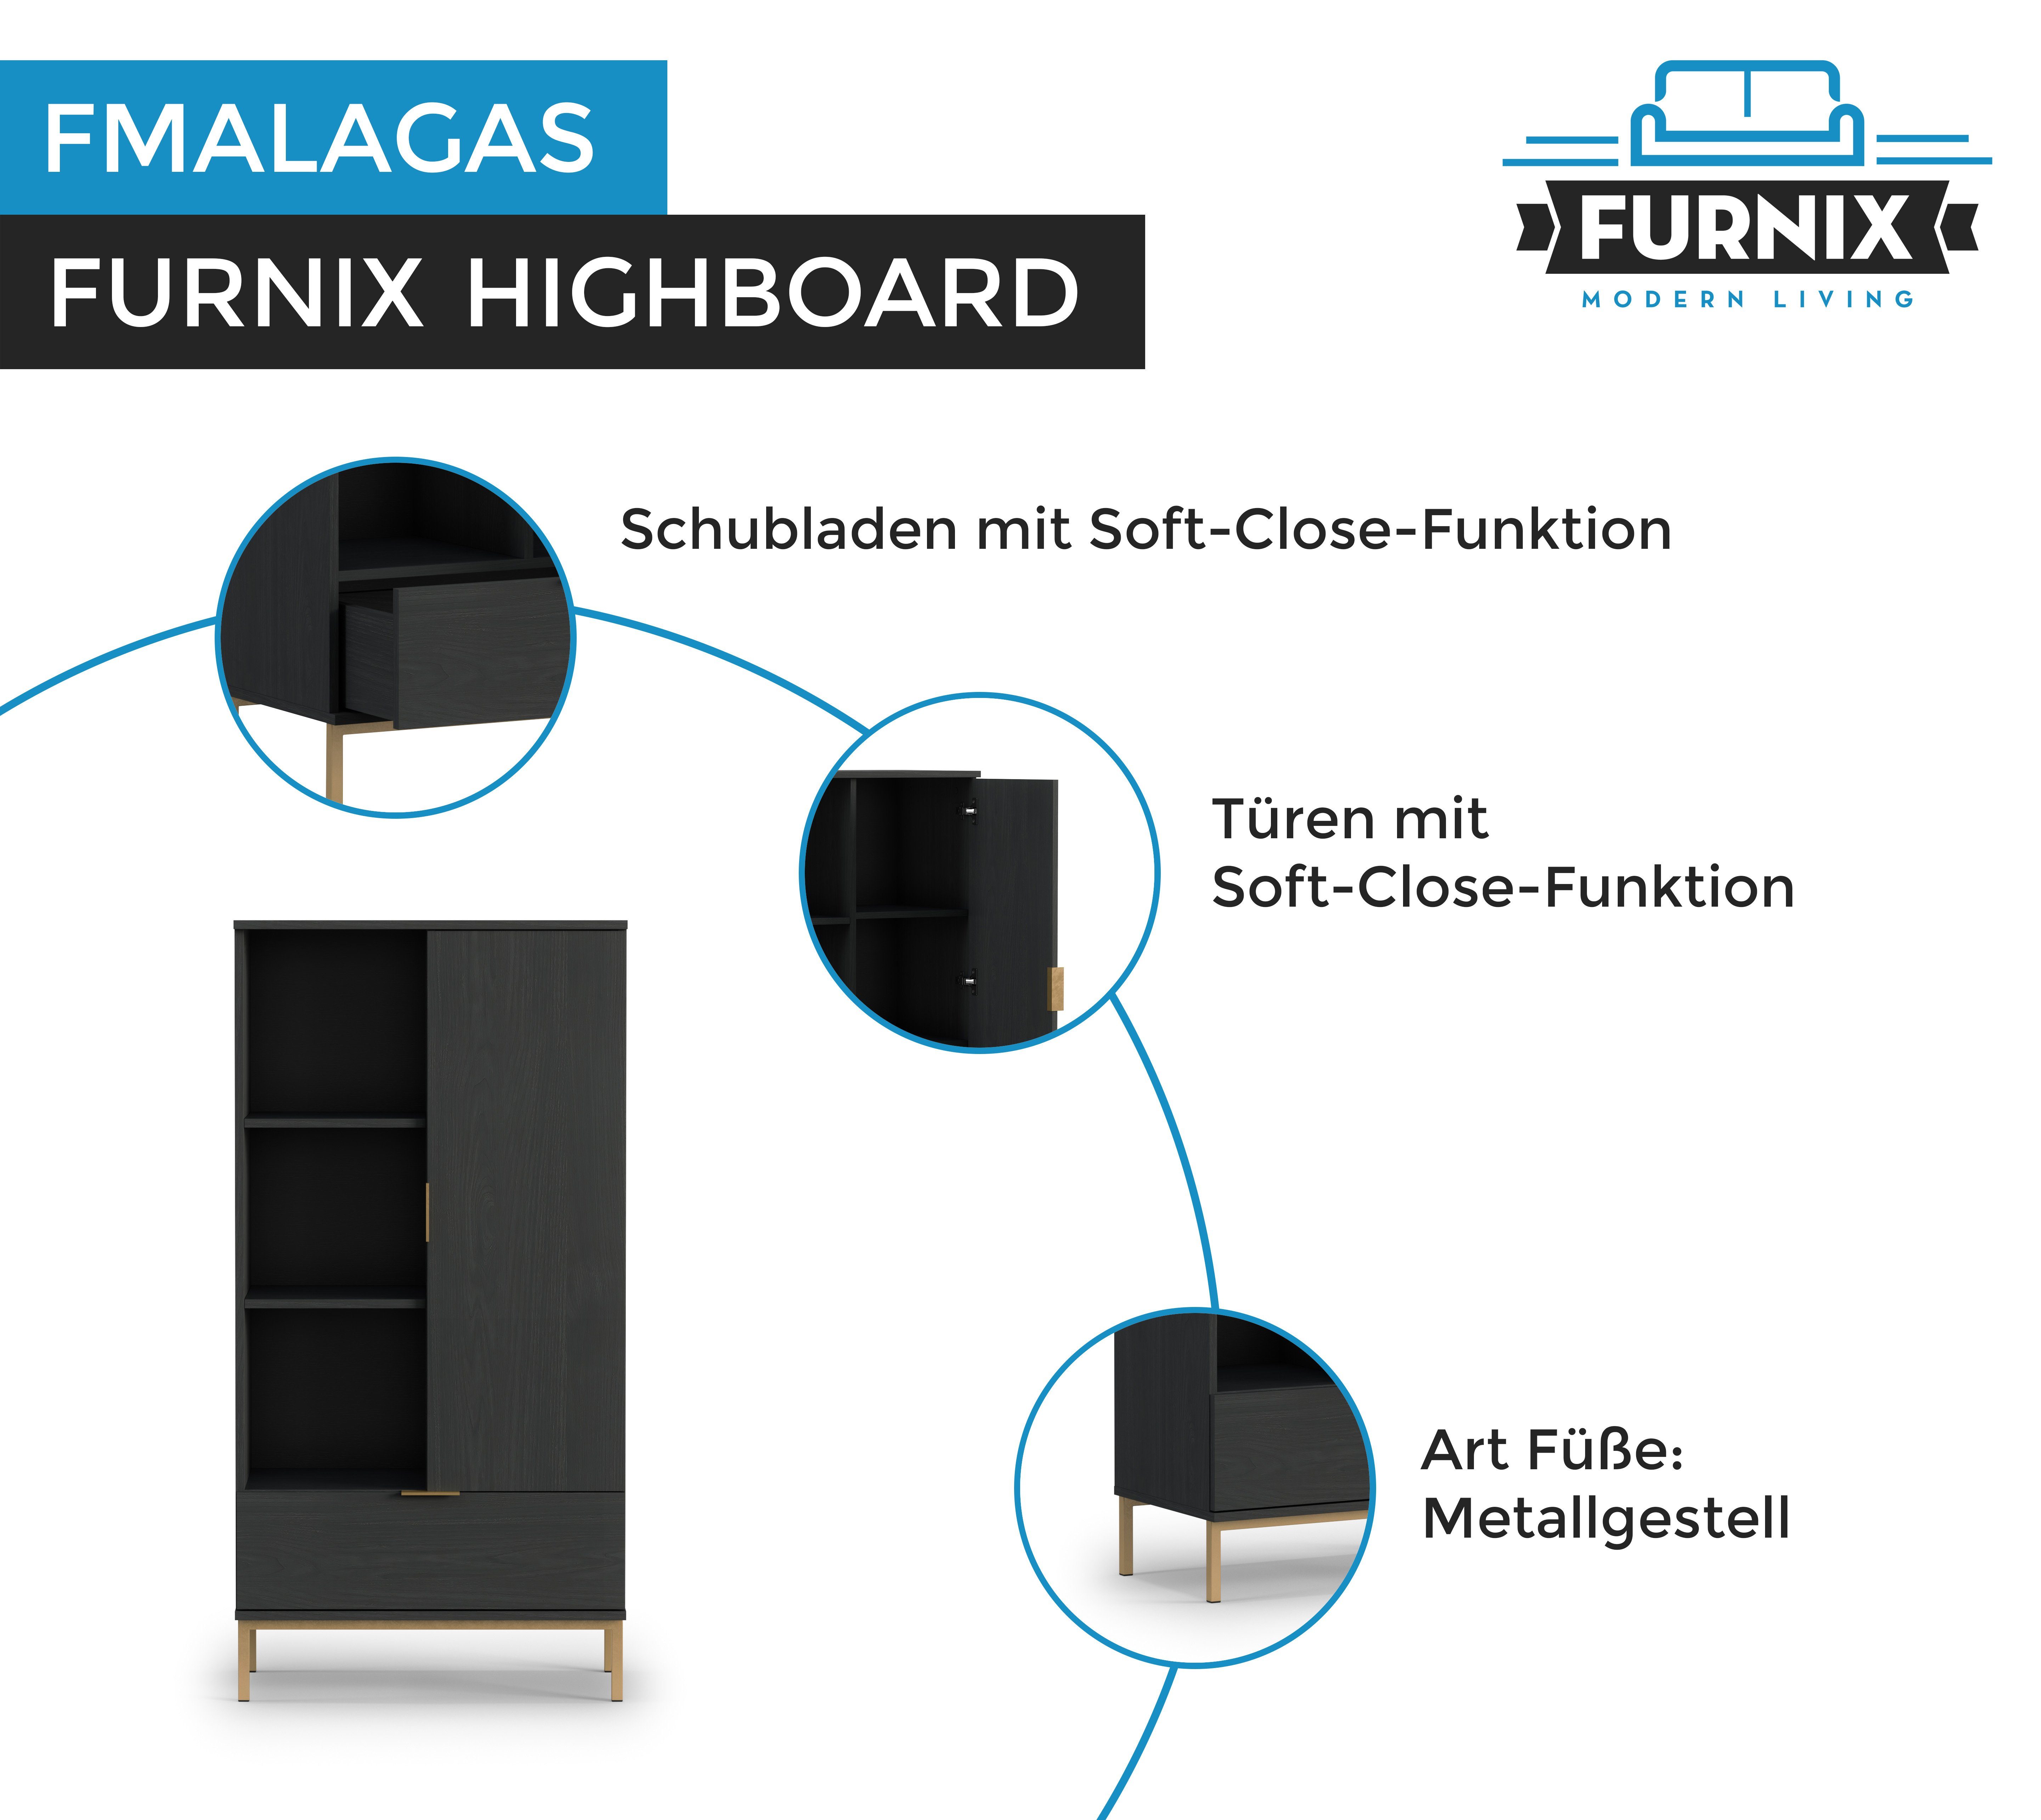 Furnix Glasvitrine FMALAGAS R70 Highboard T41 Tür Metallgestell in schwarz Marineblau Altgoldoptik Portlandsche B70 H140 cm, oder Schublade Schwarz x mit x